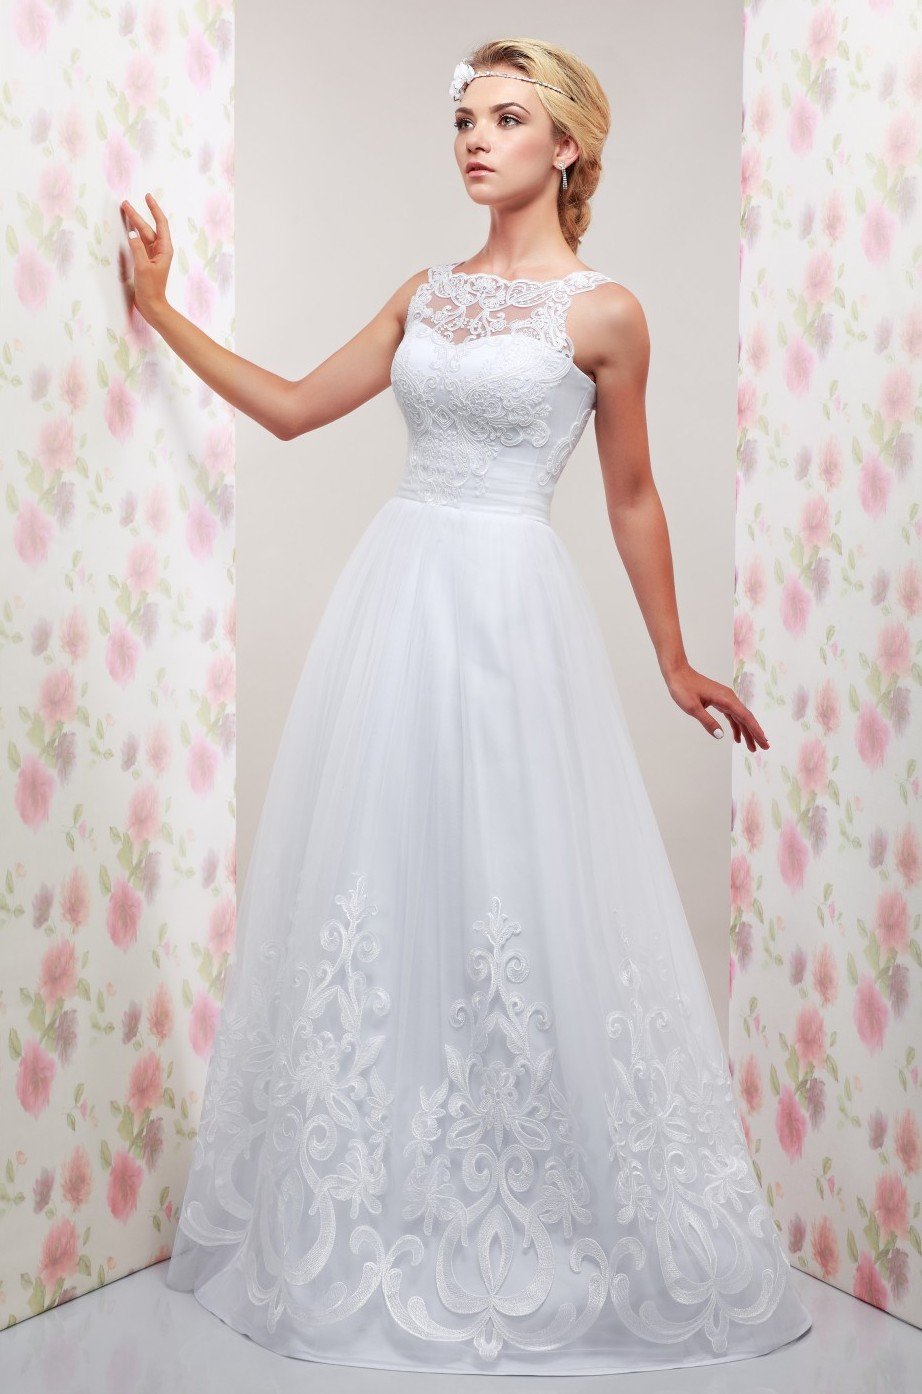 Классическое белое платье Милена из коллекции 2016 года "Счастливый день" бренда Lileya - воплощение нежности и романтики.